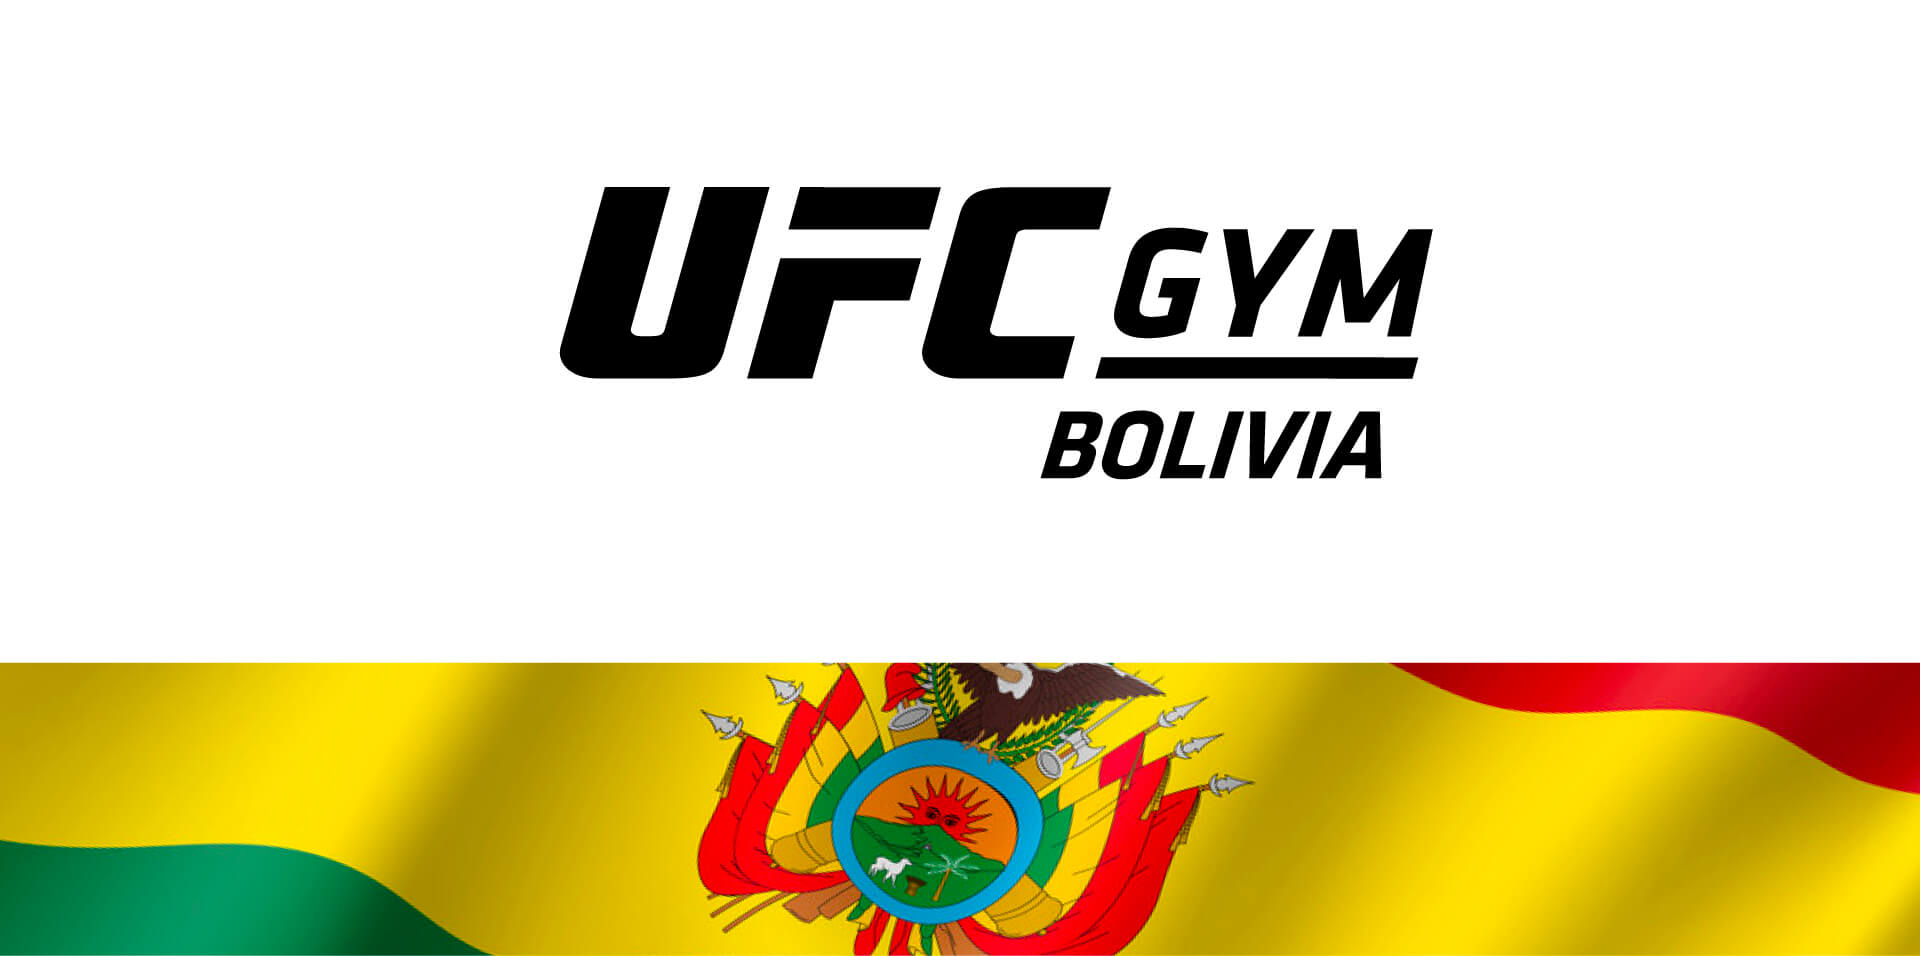 Bolivia Featured Image